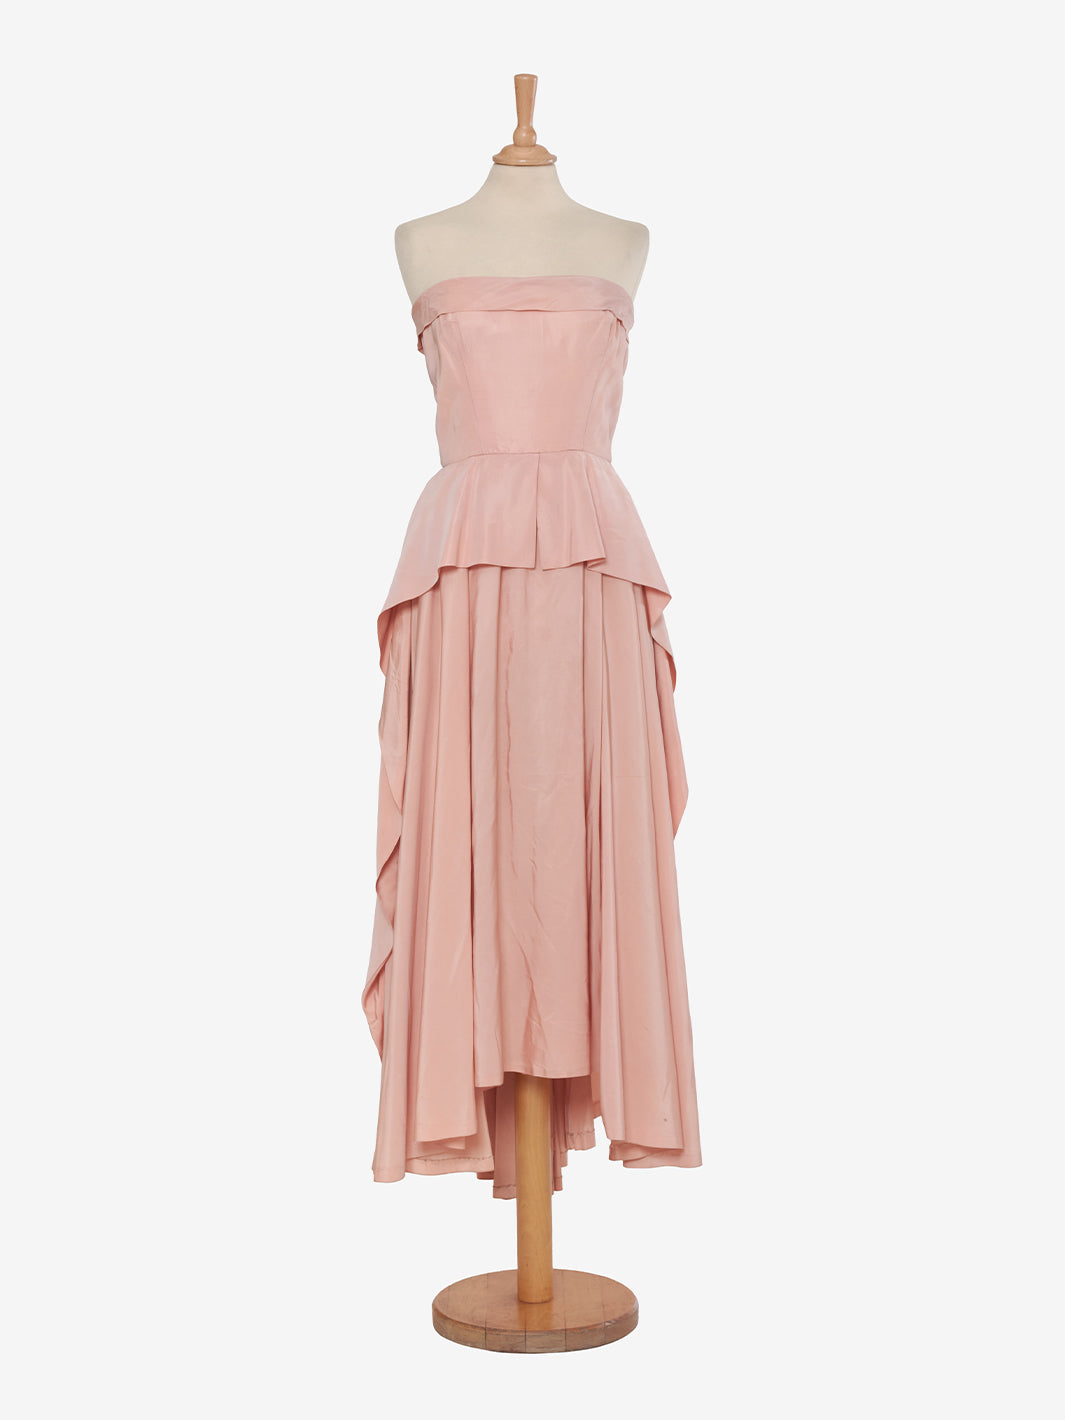 Vintage bodice and full skirt dress - '50s